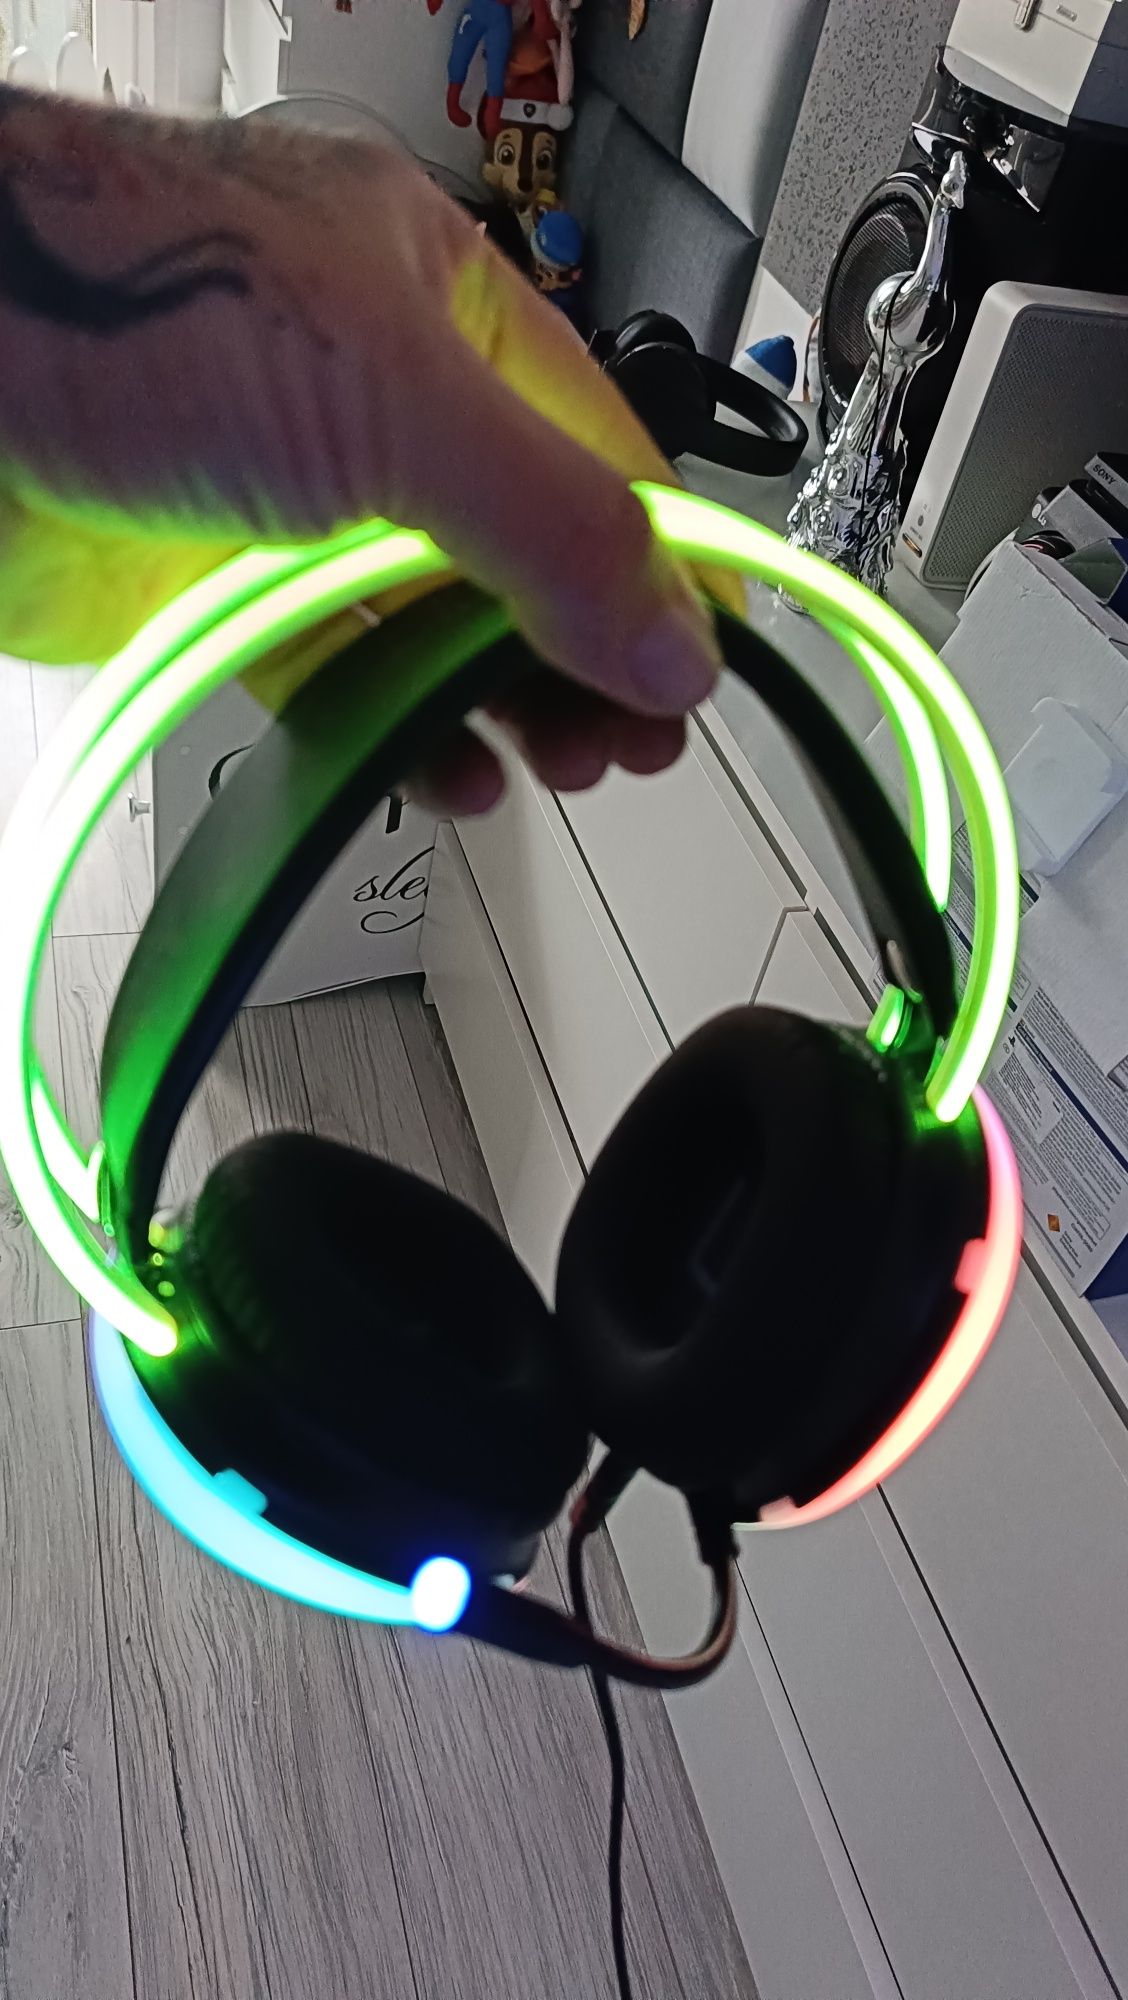 Słuchawki gamingowe podświetlane LED 16 kolorów